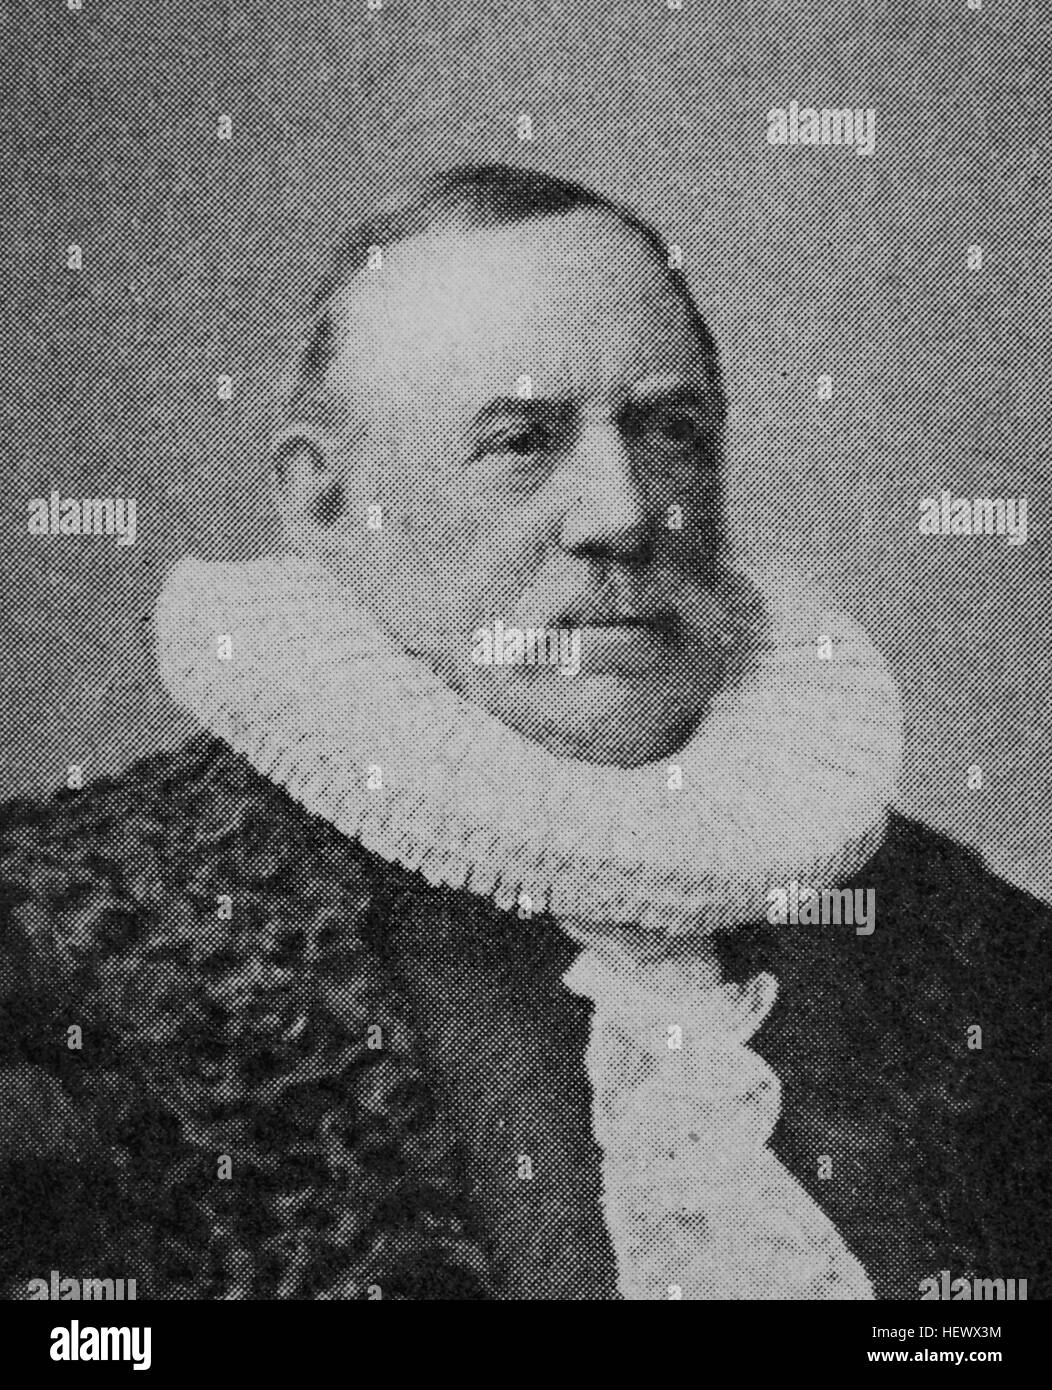 Johannes Christian Eugen Lehmann, geboren 1826, Bürgermeister von Hamburg, Deutschland, Bild aus dem Jahr 1895, digital verbessert Stockfoto